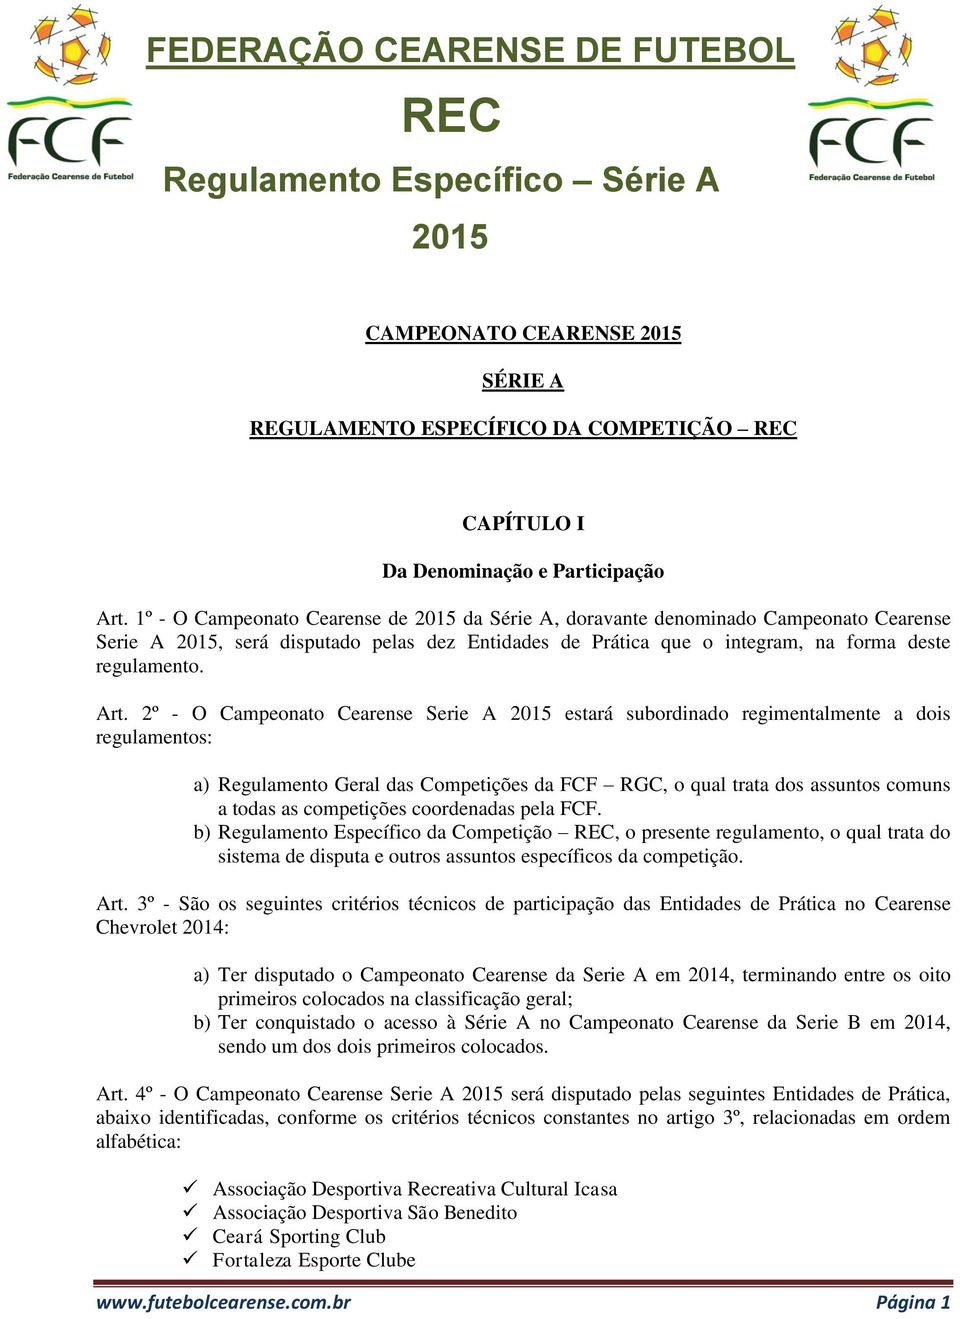 2º - O Campeonato Cearense Serie A estará subordinado regimentalmente a dois regulamentos: a) Regulamento Geral das Competições da FCF RGC, o qual trata dos assuntos comuns a todas as competições